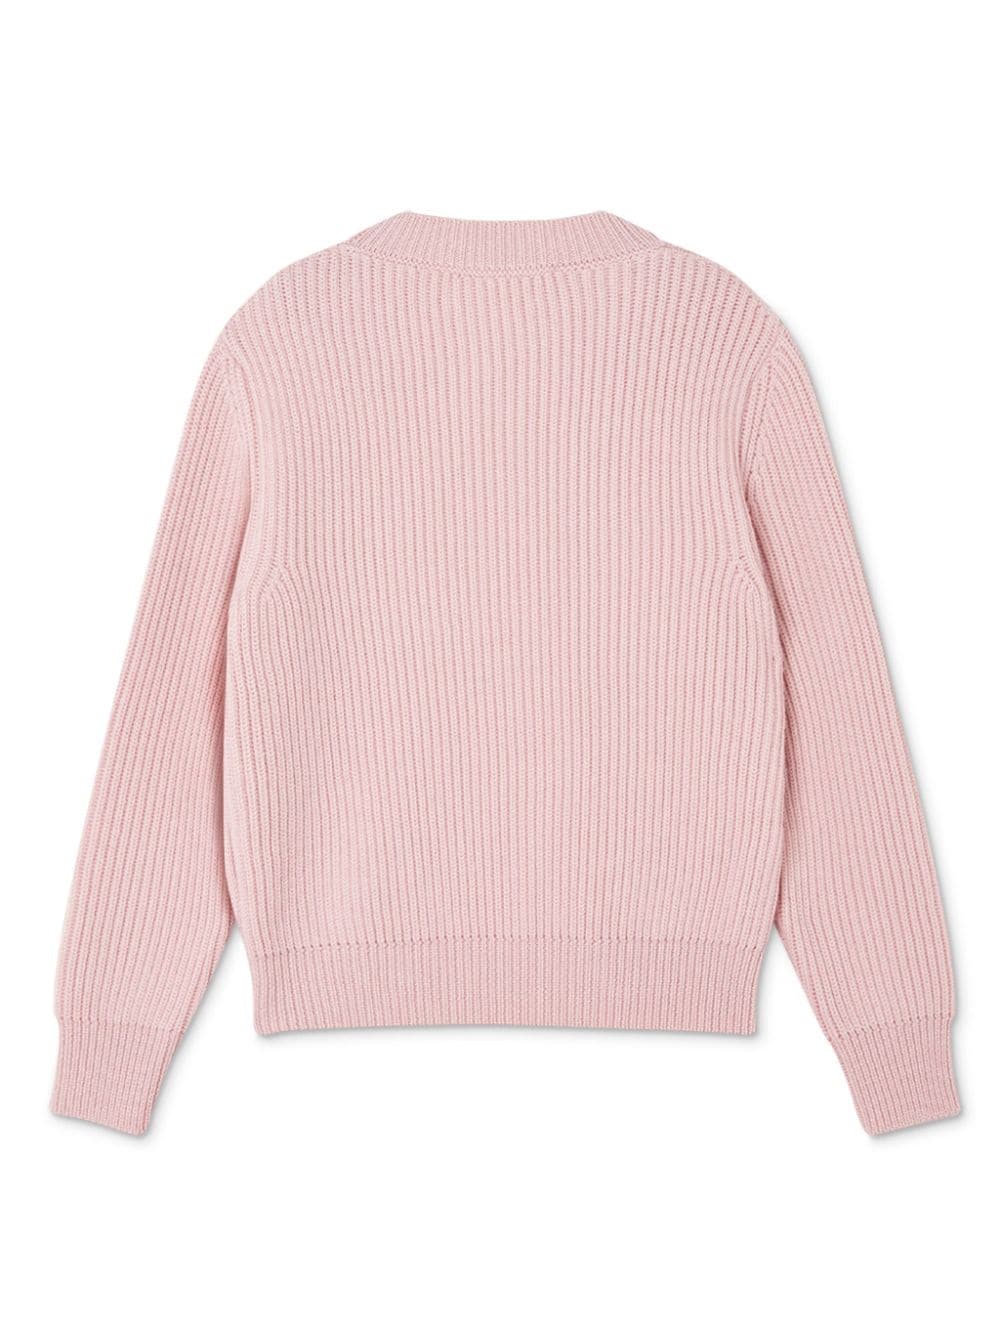 Maglione rosa bambina